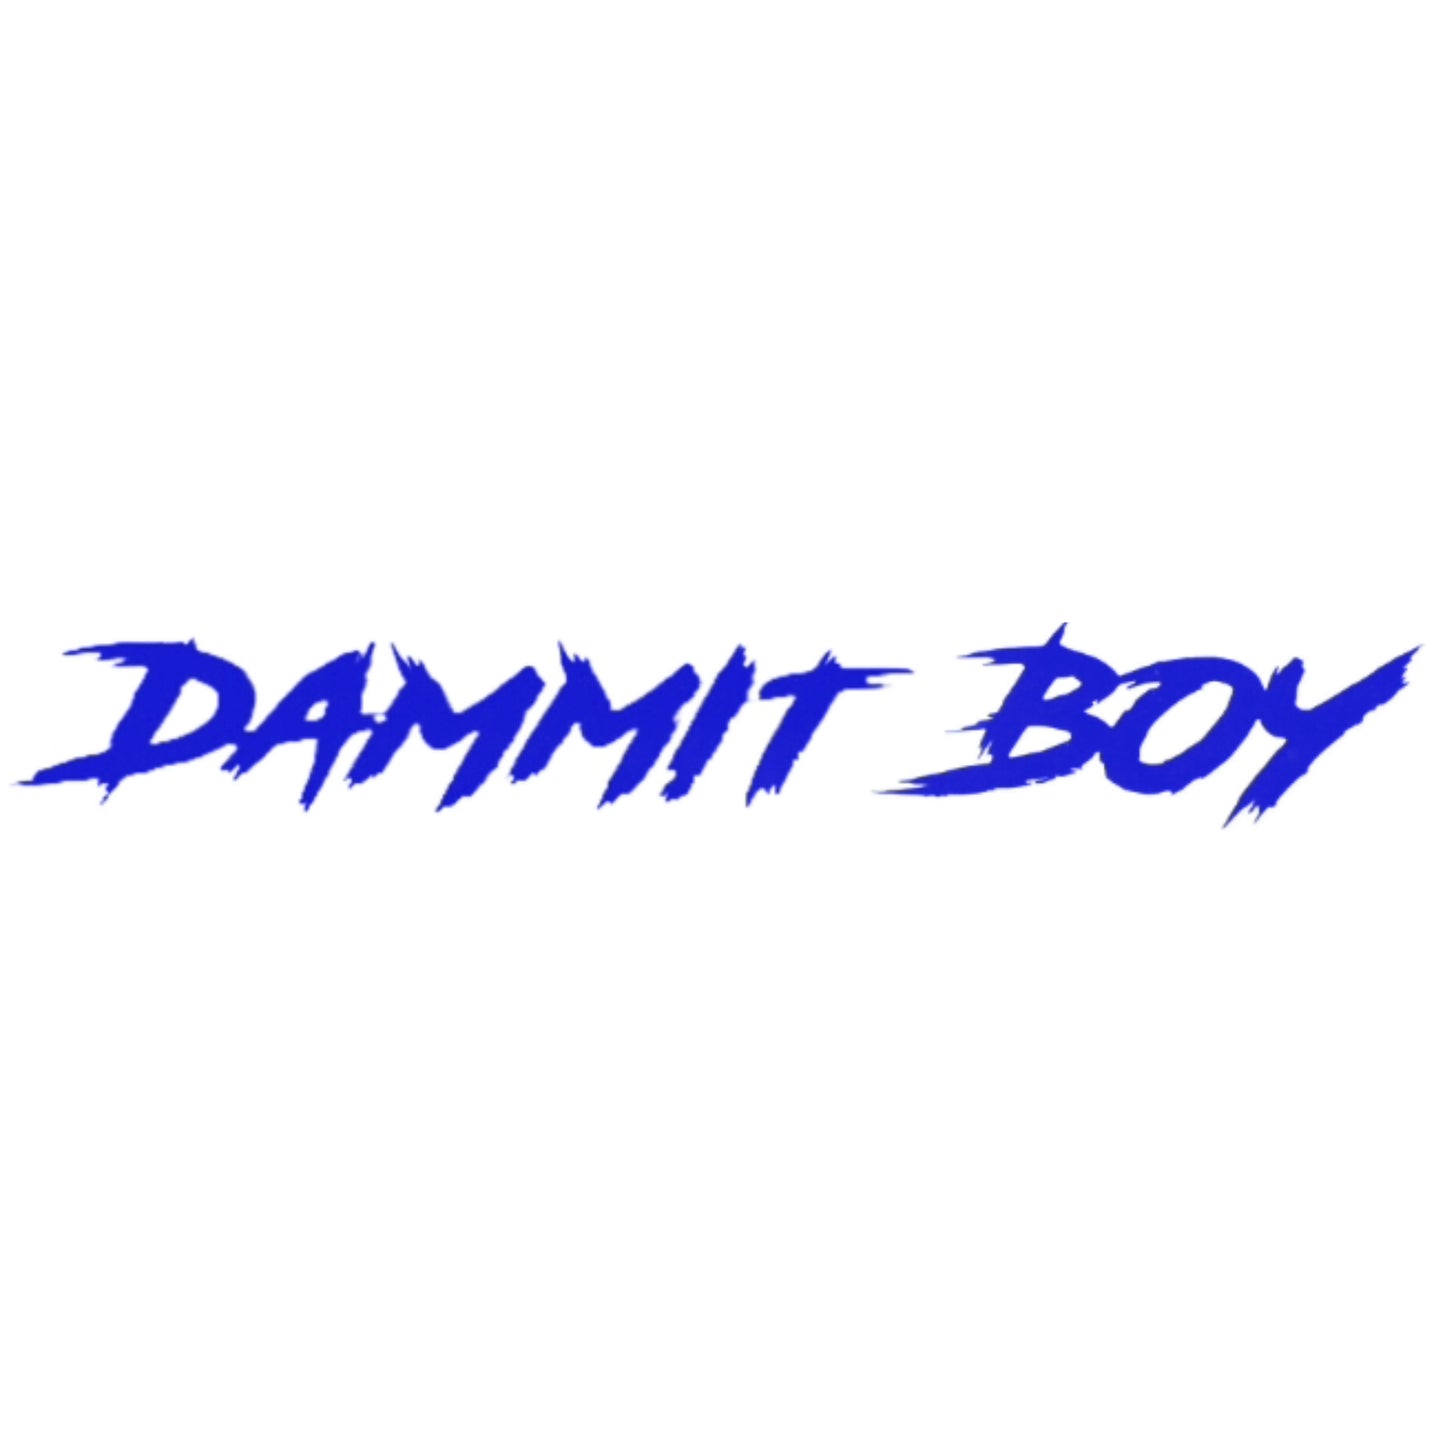 "DAMMIT BOY" WINDSHIELD DECAL